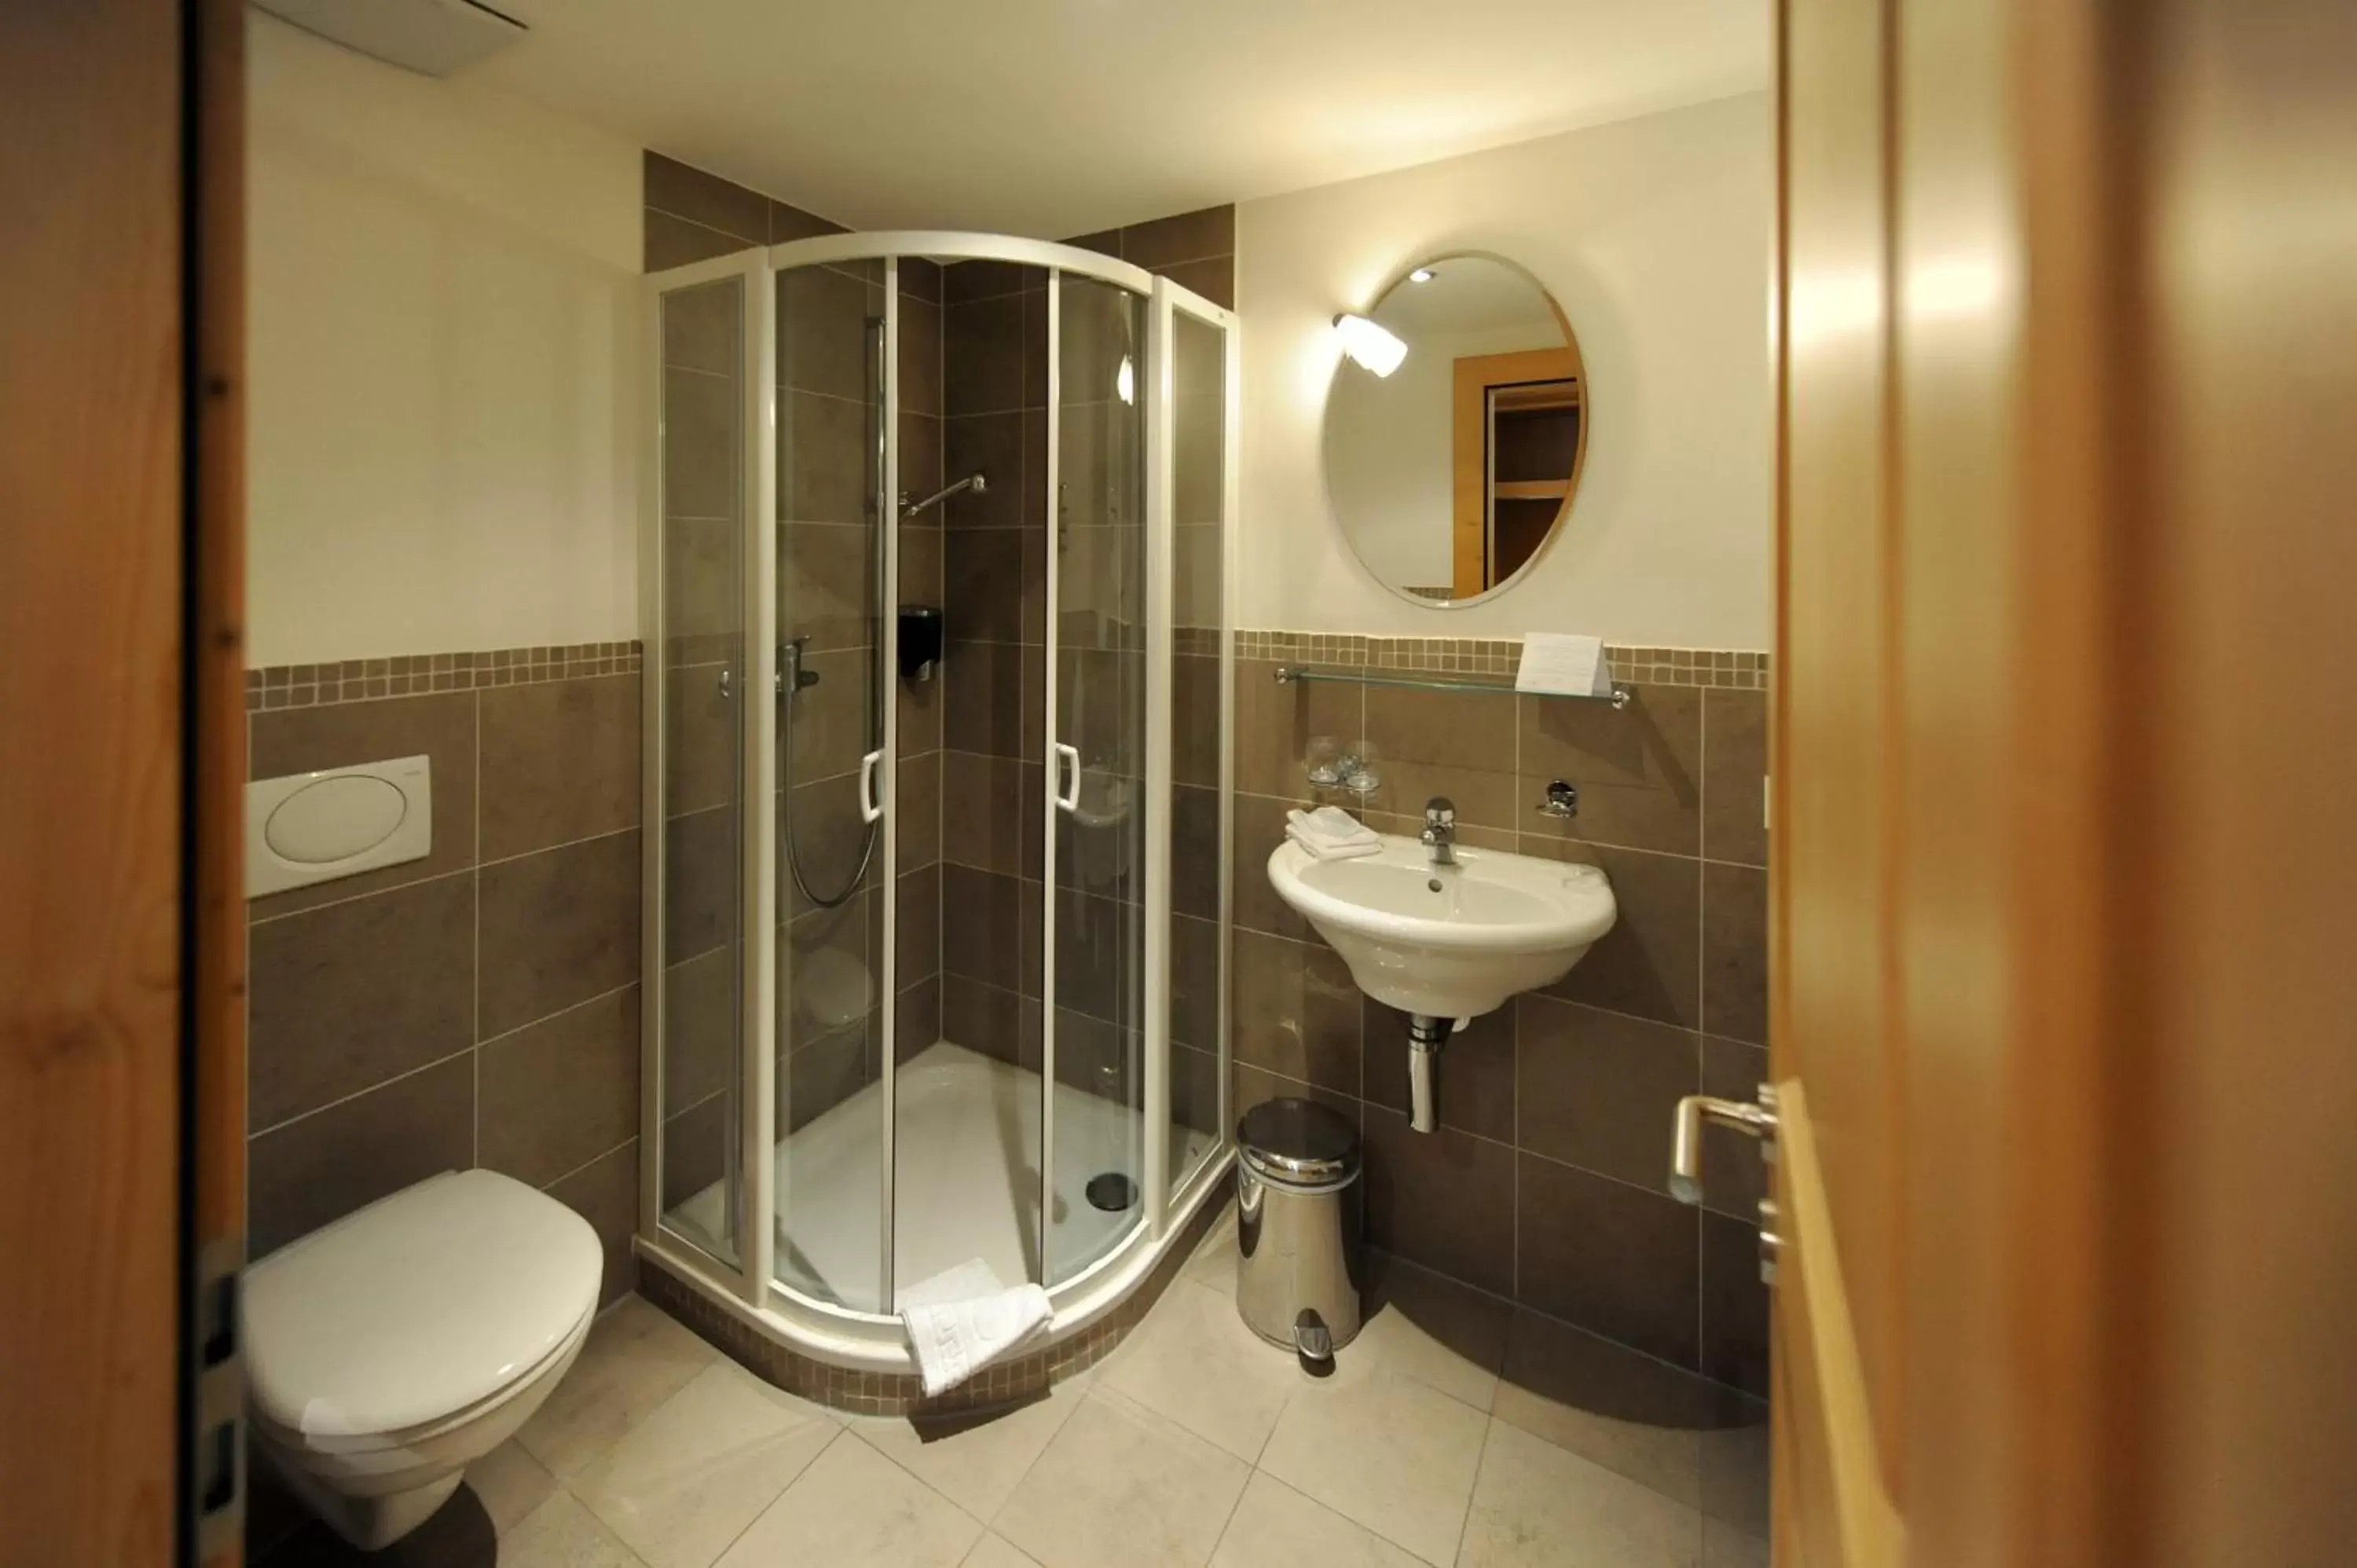 Bathroom in Hotel Bellerive Gstaad